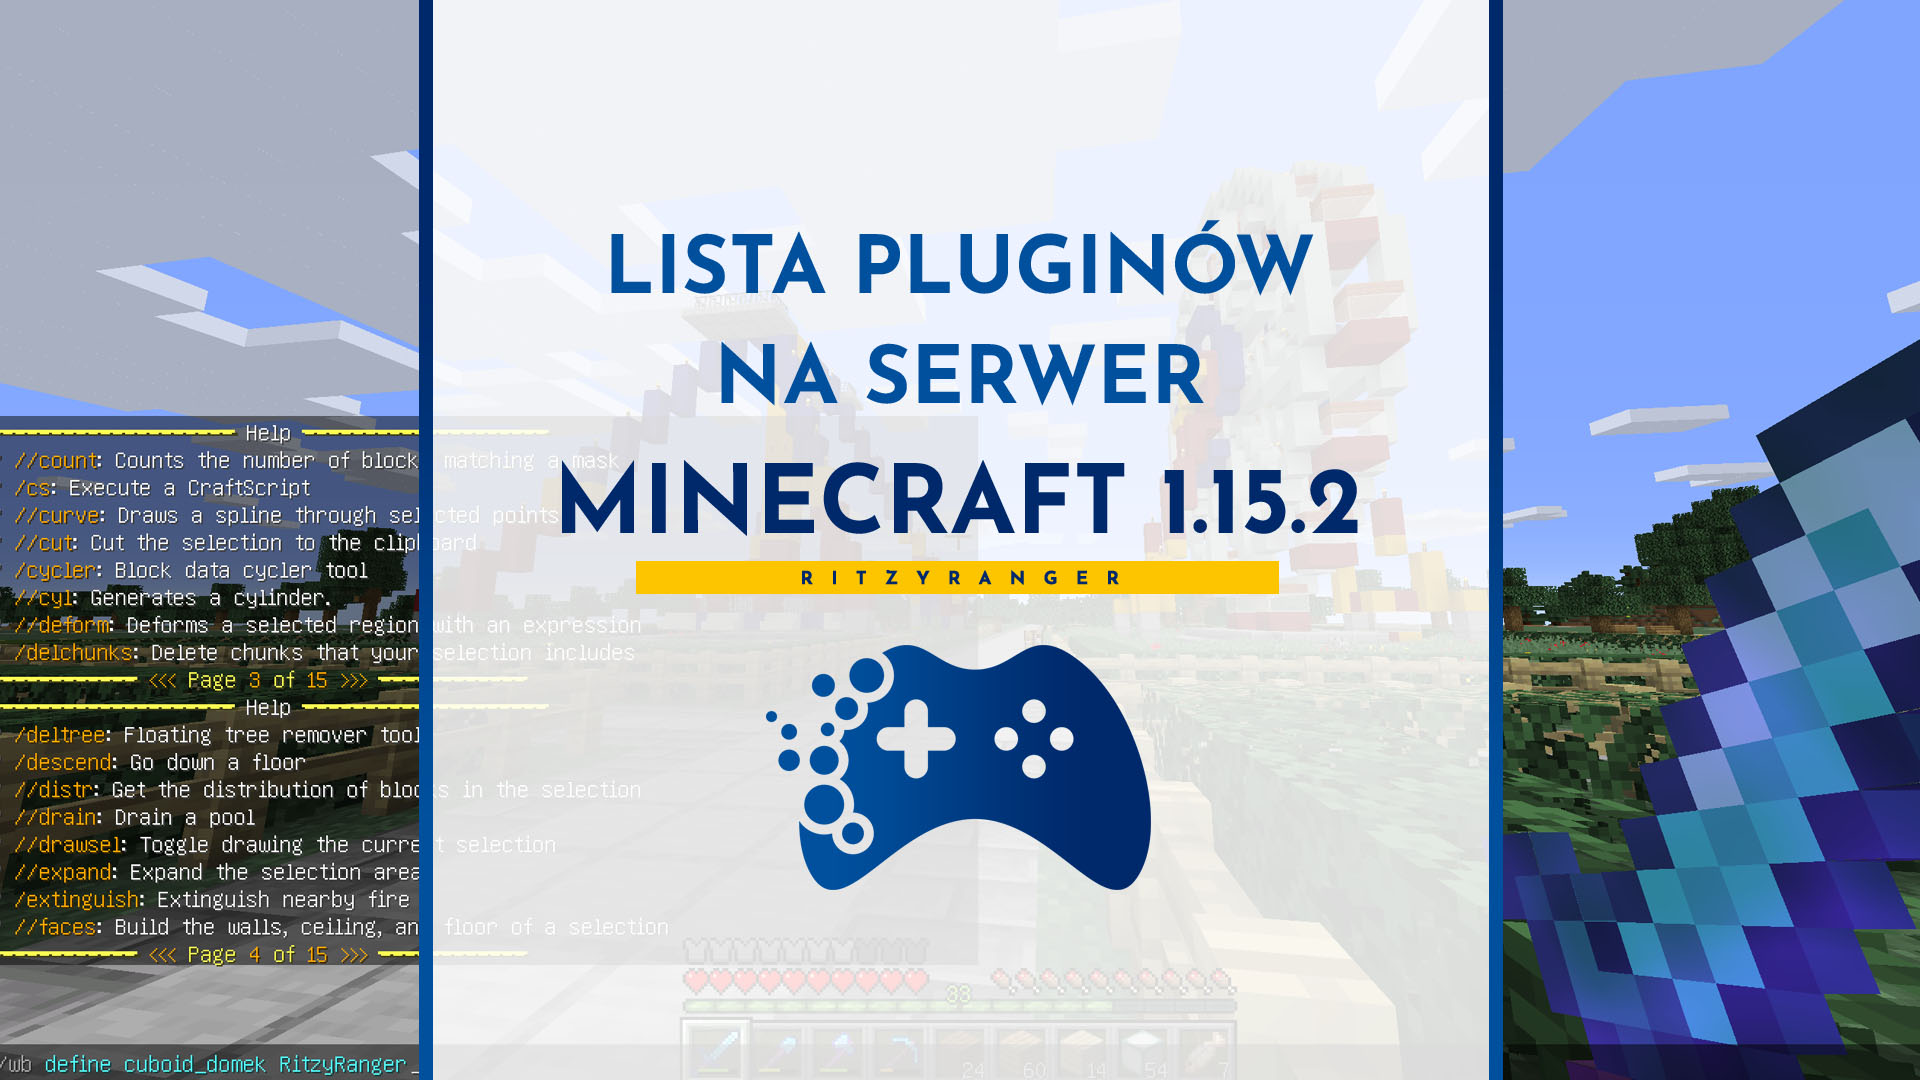 Lista pluginów na serwer Minecraft 1.15.2 Spigot